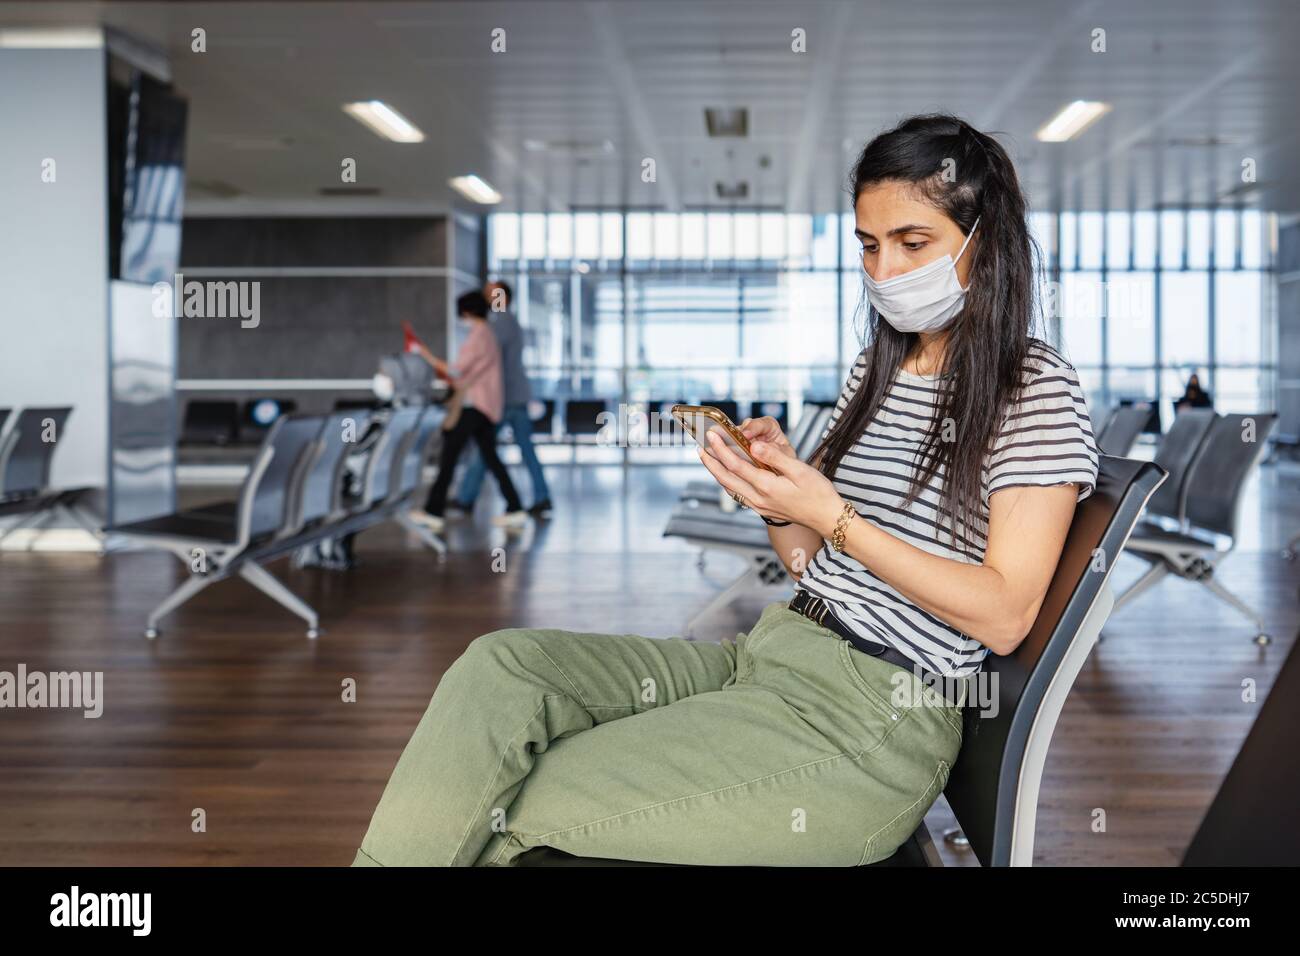 La máscara de protección de la mujer joven está sentada en un salón de espera y mirando su teléfono móvil en el aeropuerto. El virus de la corona se rompe. Foto de alta calidad Foto de stock